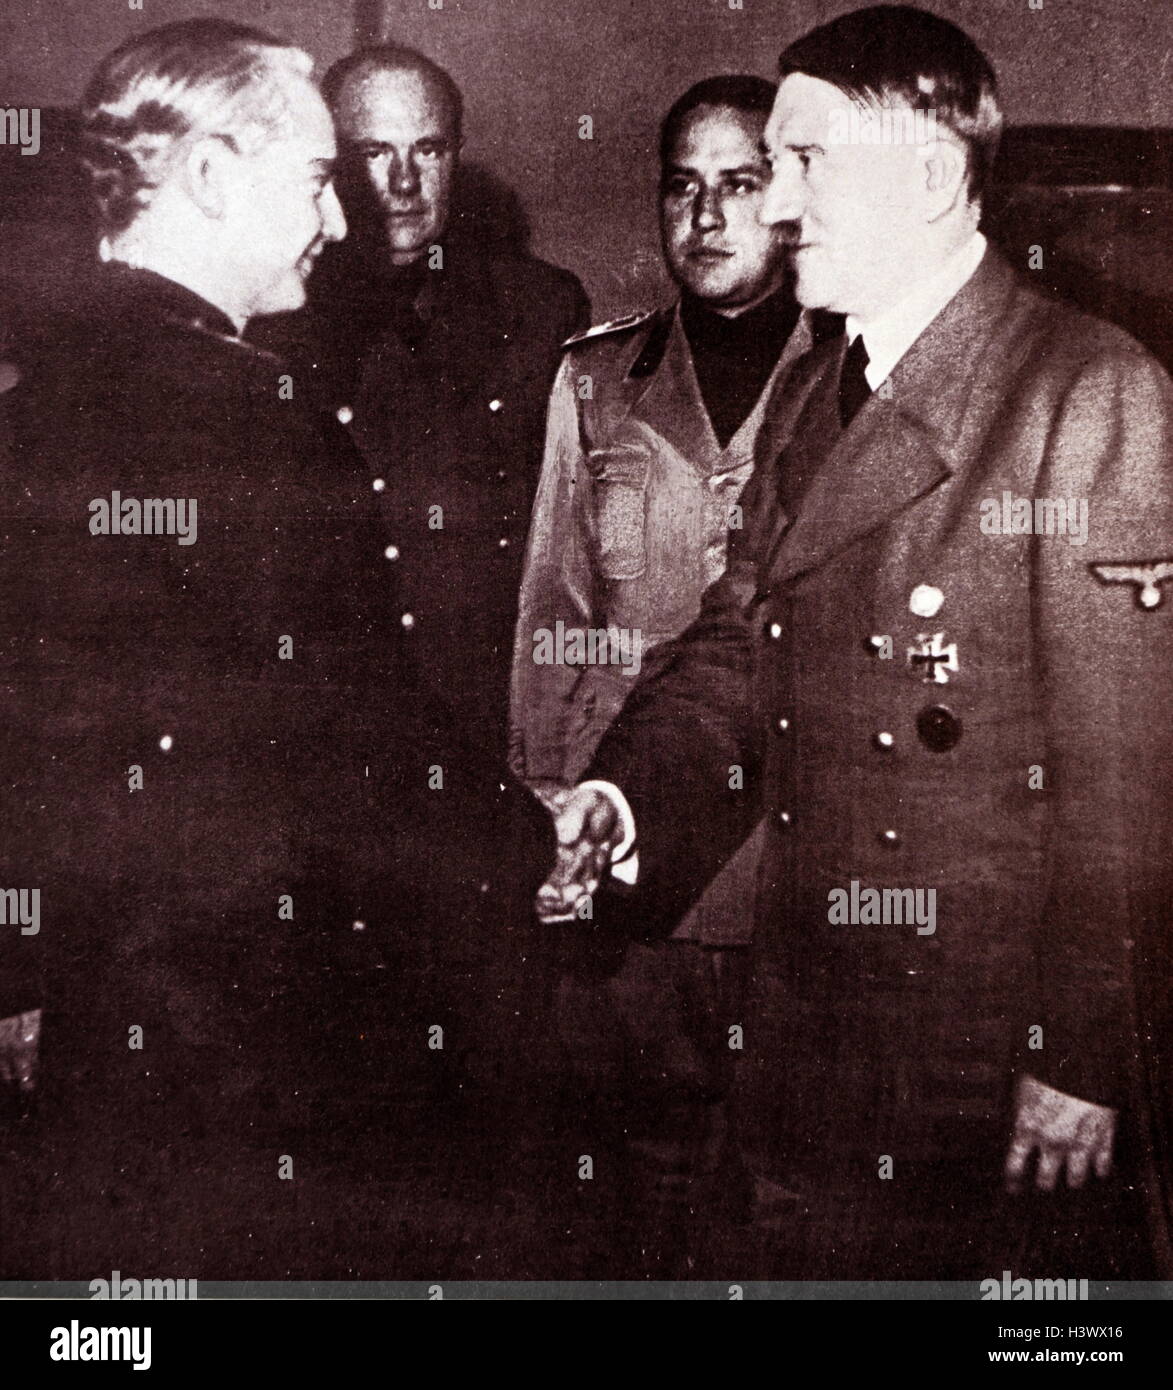 Foto: Adolf Hitler (1889-1945), deutscher Politiker, war der Führer der Nsdap, Bundeskanzler von Deutschland und Führer des nationalsozialistischen Deutschland. Vom 20. Jahrhundert Stockfoto